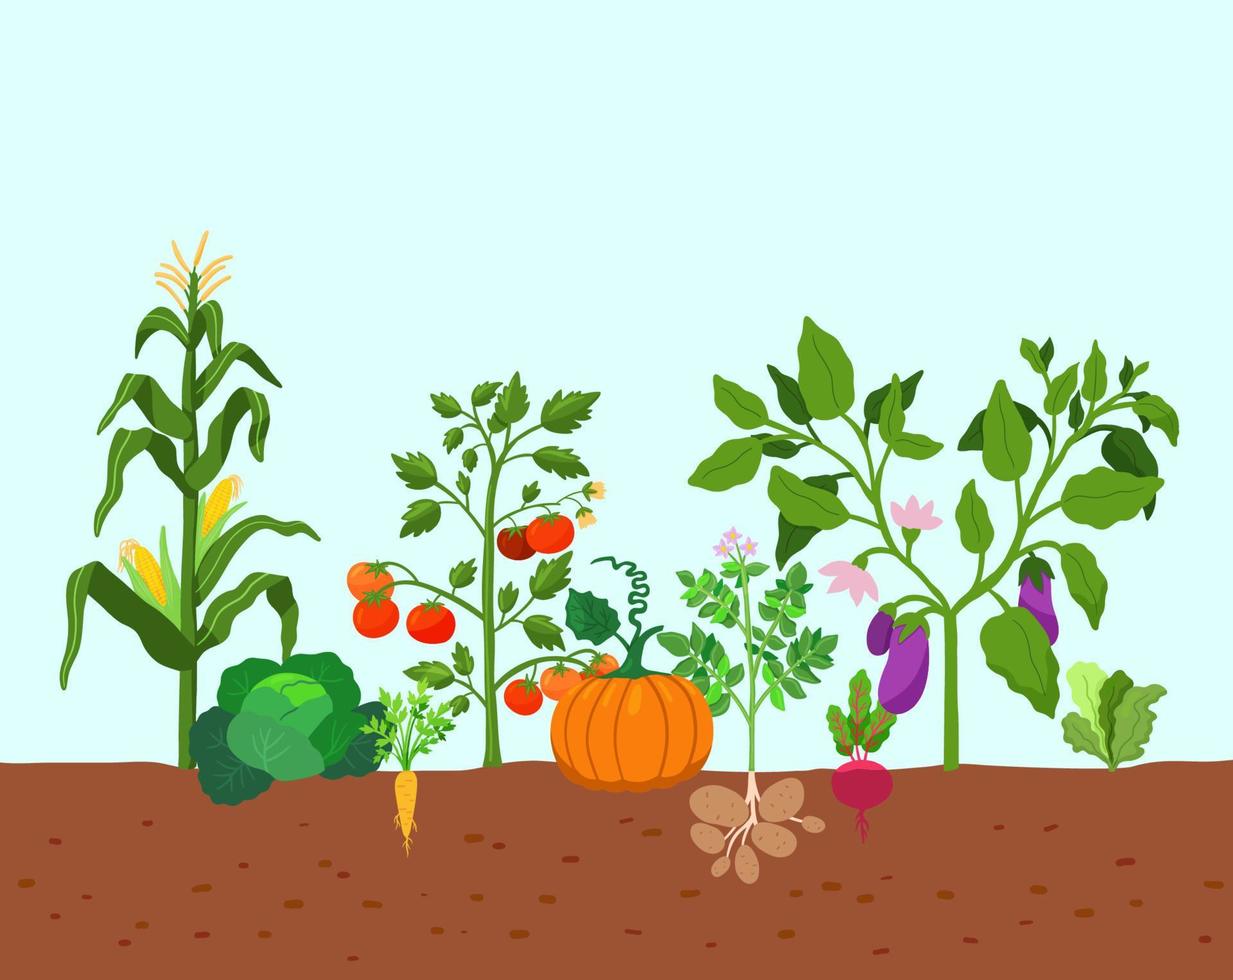 colheita de legumes batatas, milho, abóboras, tomates e vários vegetais no chão. ilustração vetorial em estilo simples. fazenda de cultivo de vegetais. vetor